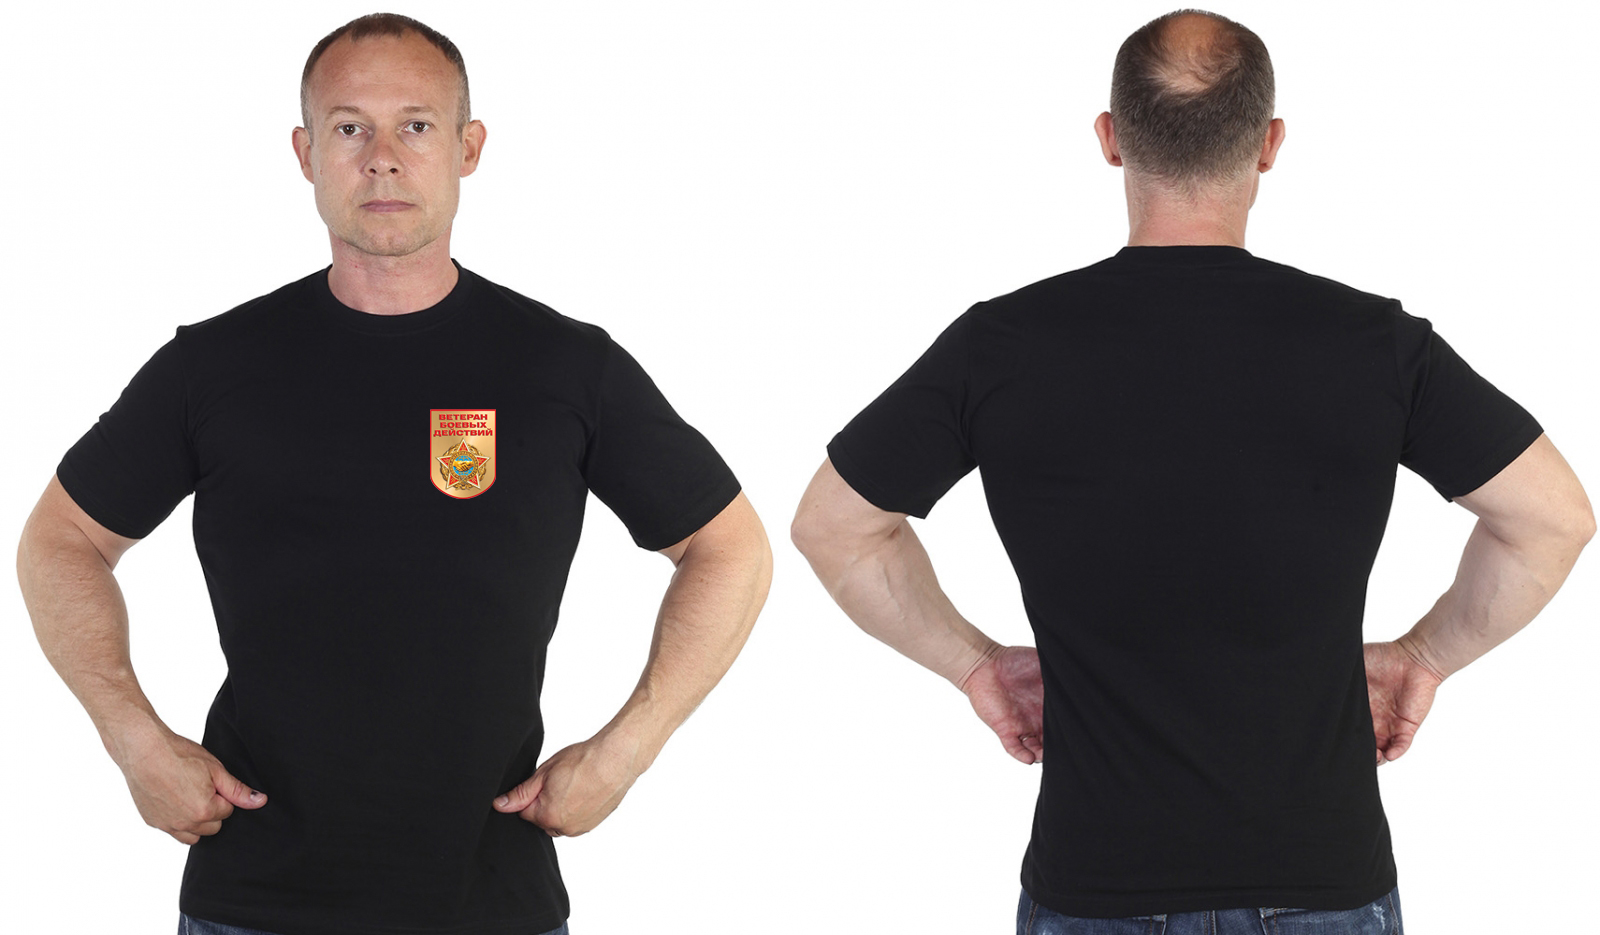 Чёрная футболка с термотрансфером "Ветеран боевых действий" 